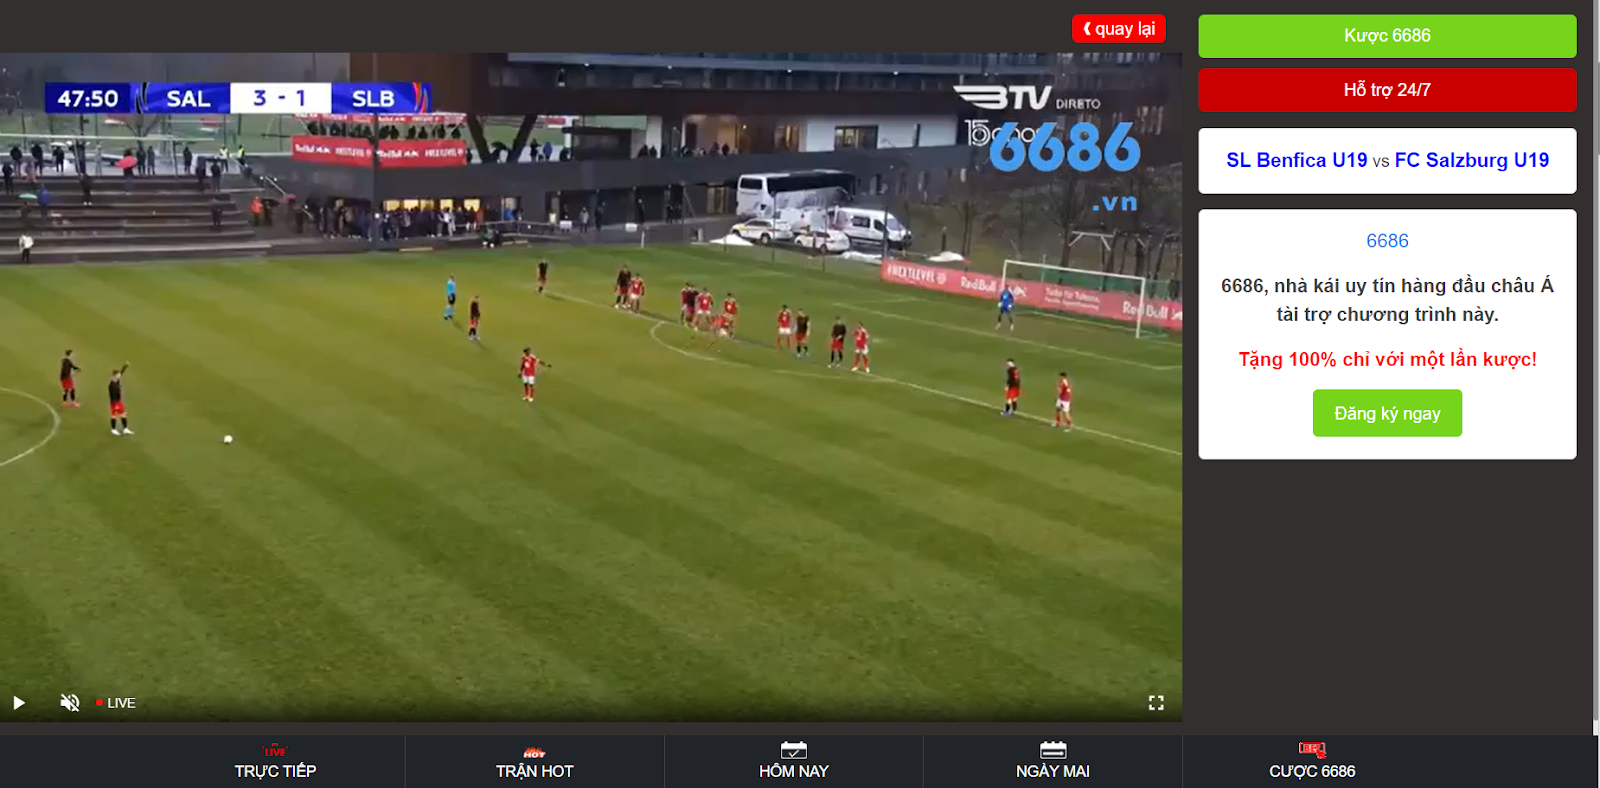 Xoilac TV - Xem trực tiếp bóng đá miễn phí 699 giải đấu siêu hấp dẫn, , Hỏi đáp